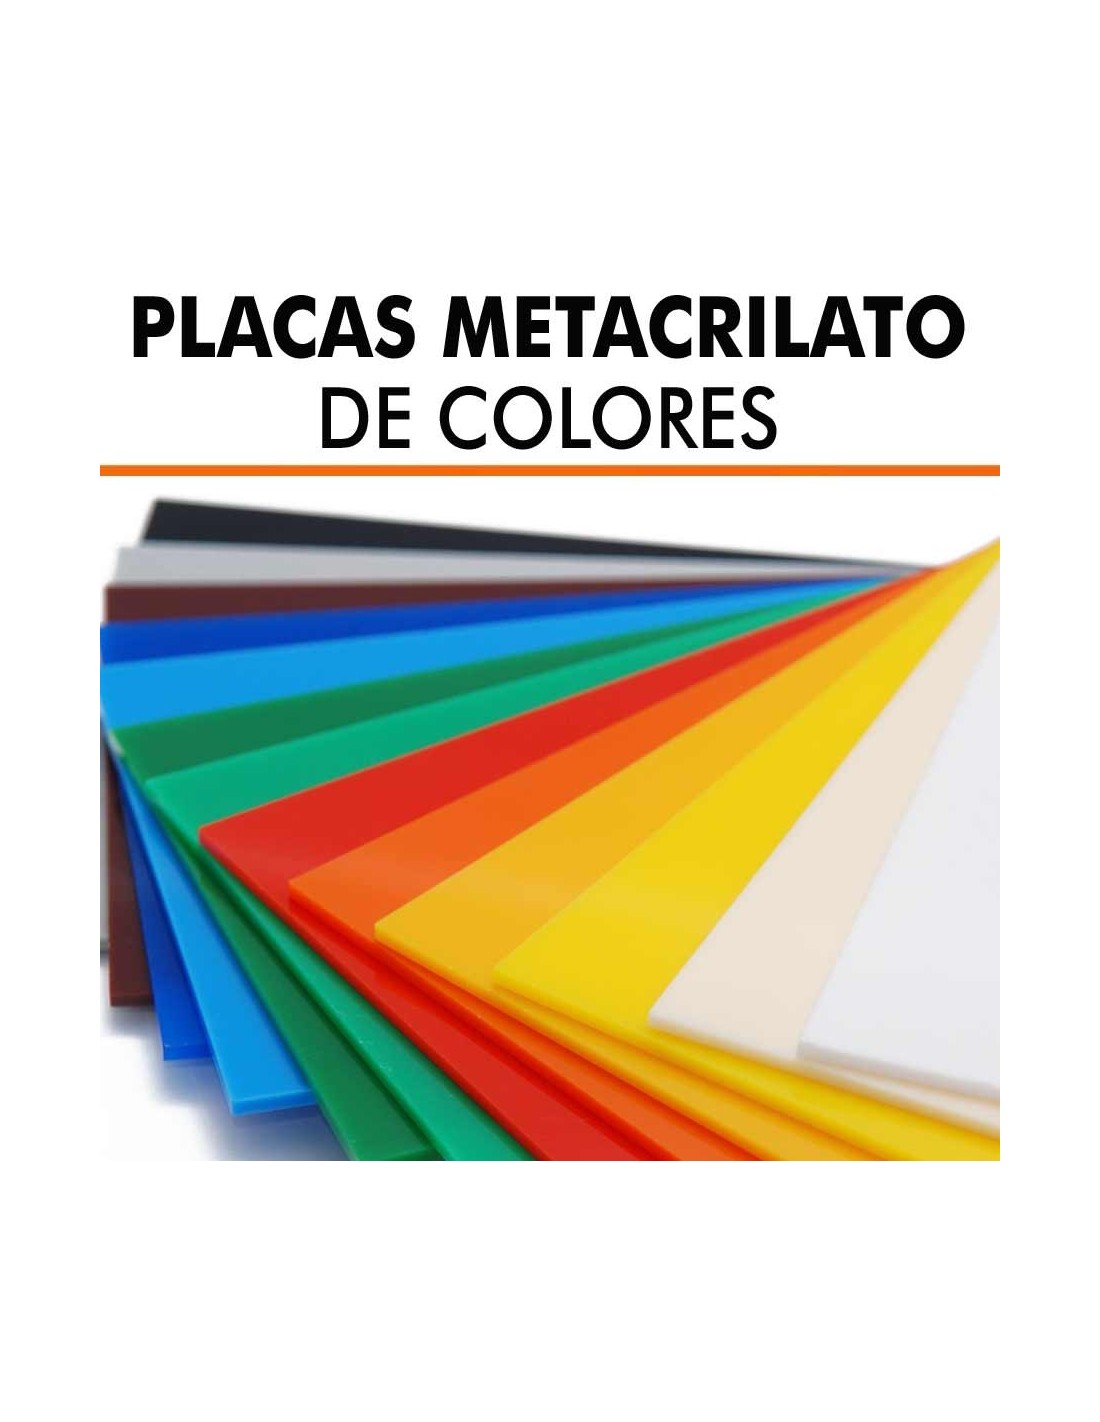 Placa de metacrilato de colores, precio de metacrilato de color a medida